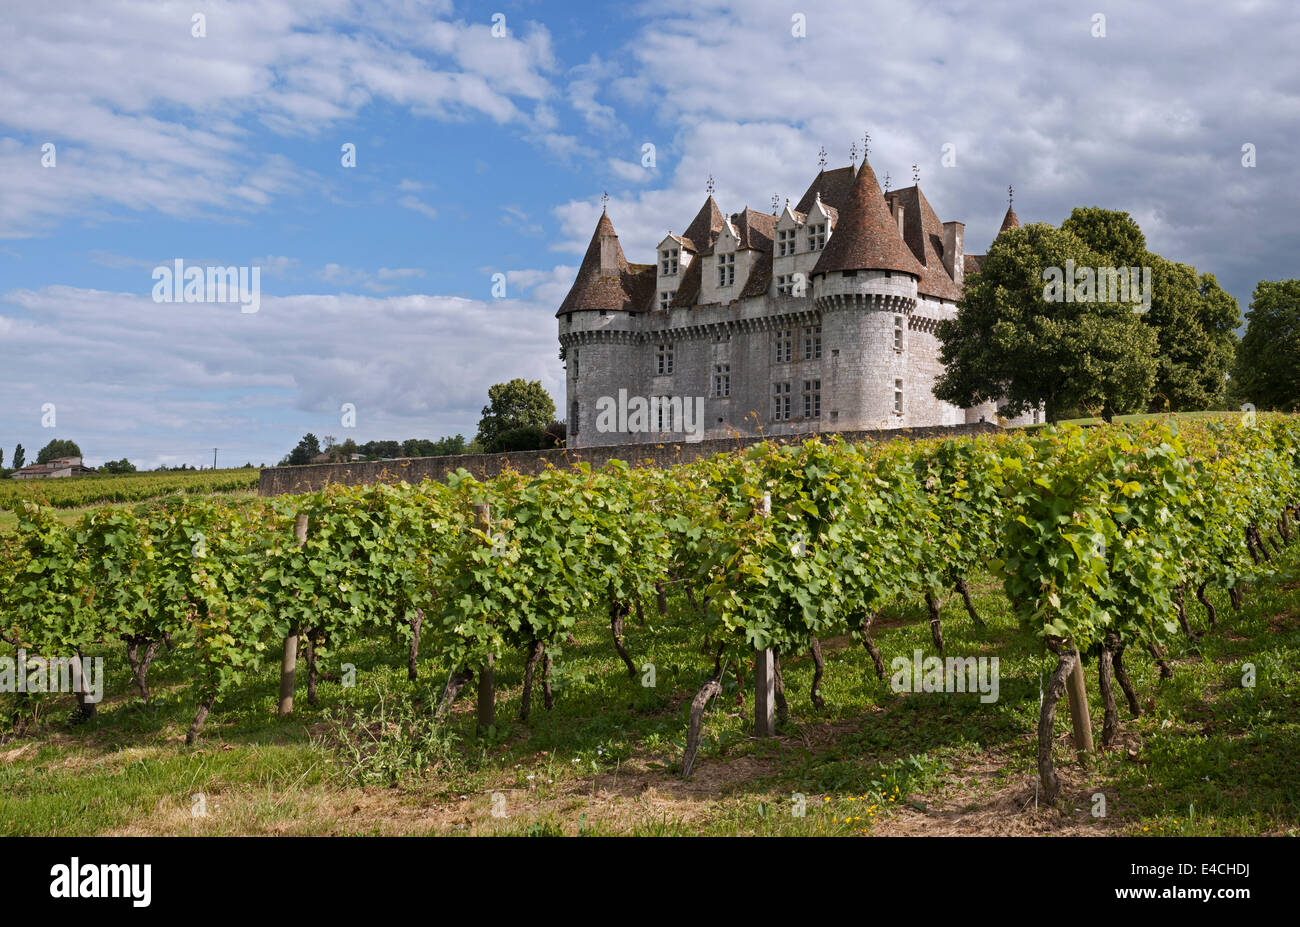 Le château Le Château de Monbazillac et vignoble, Dordogne, Aquitaine, France Banque D'Images